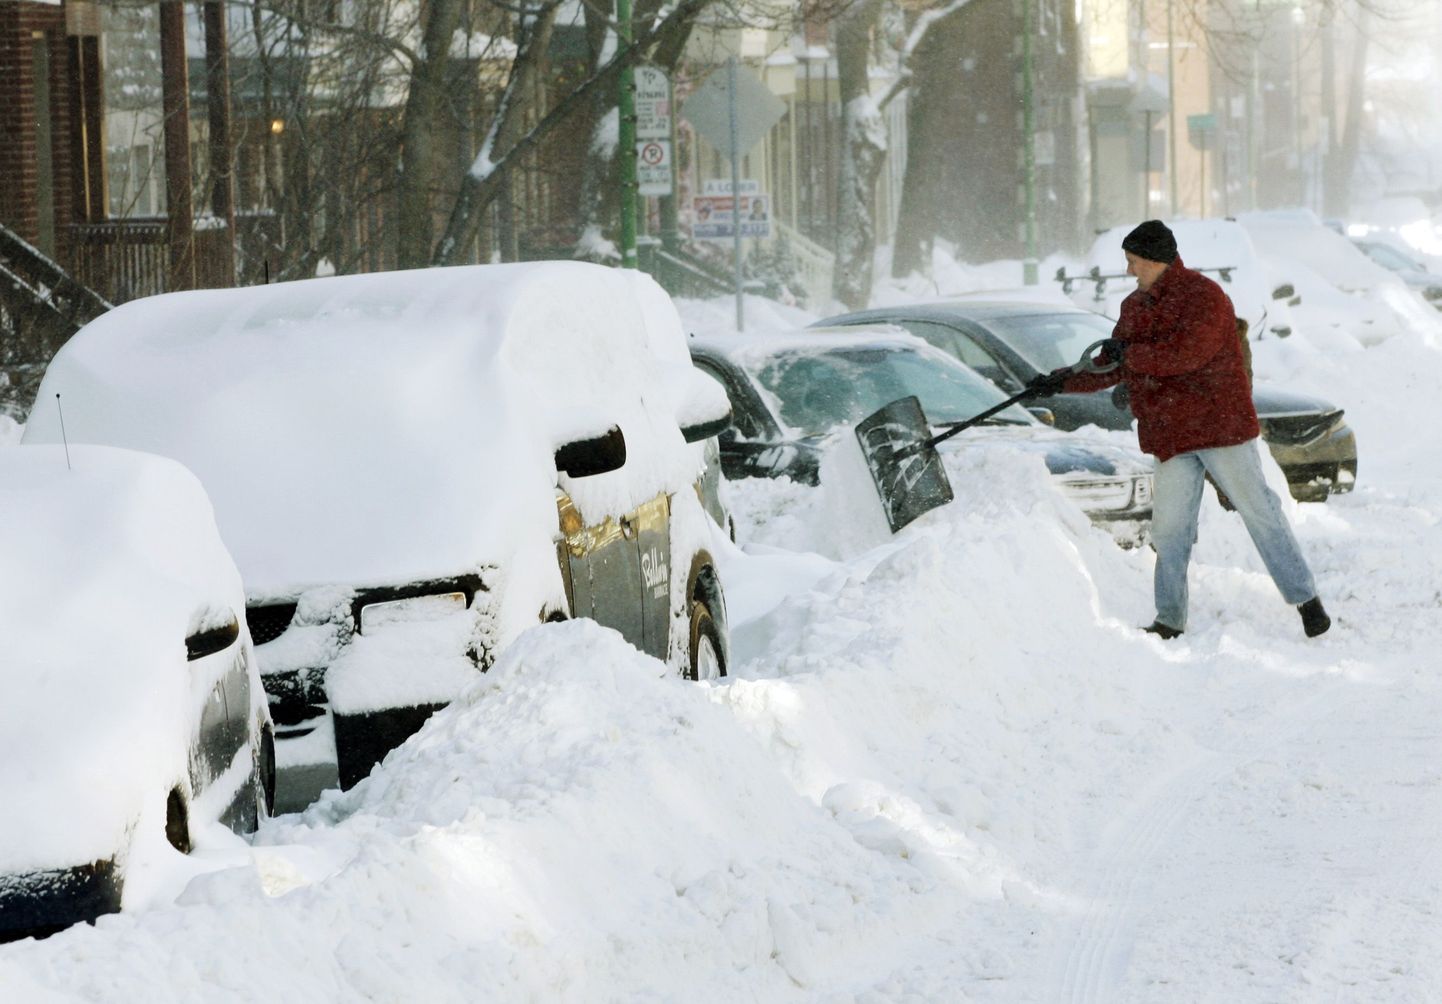 Kanadalane autolt lund ära lükkamas